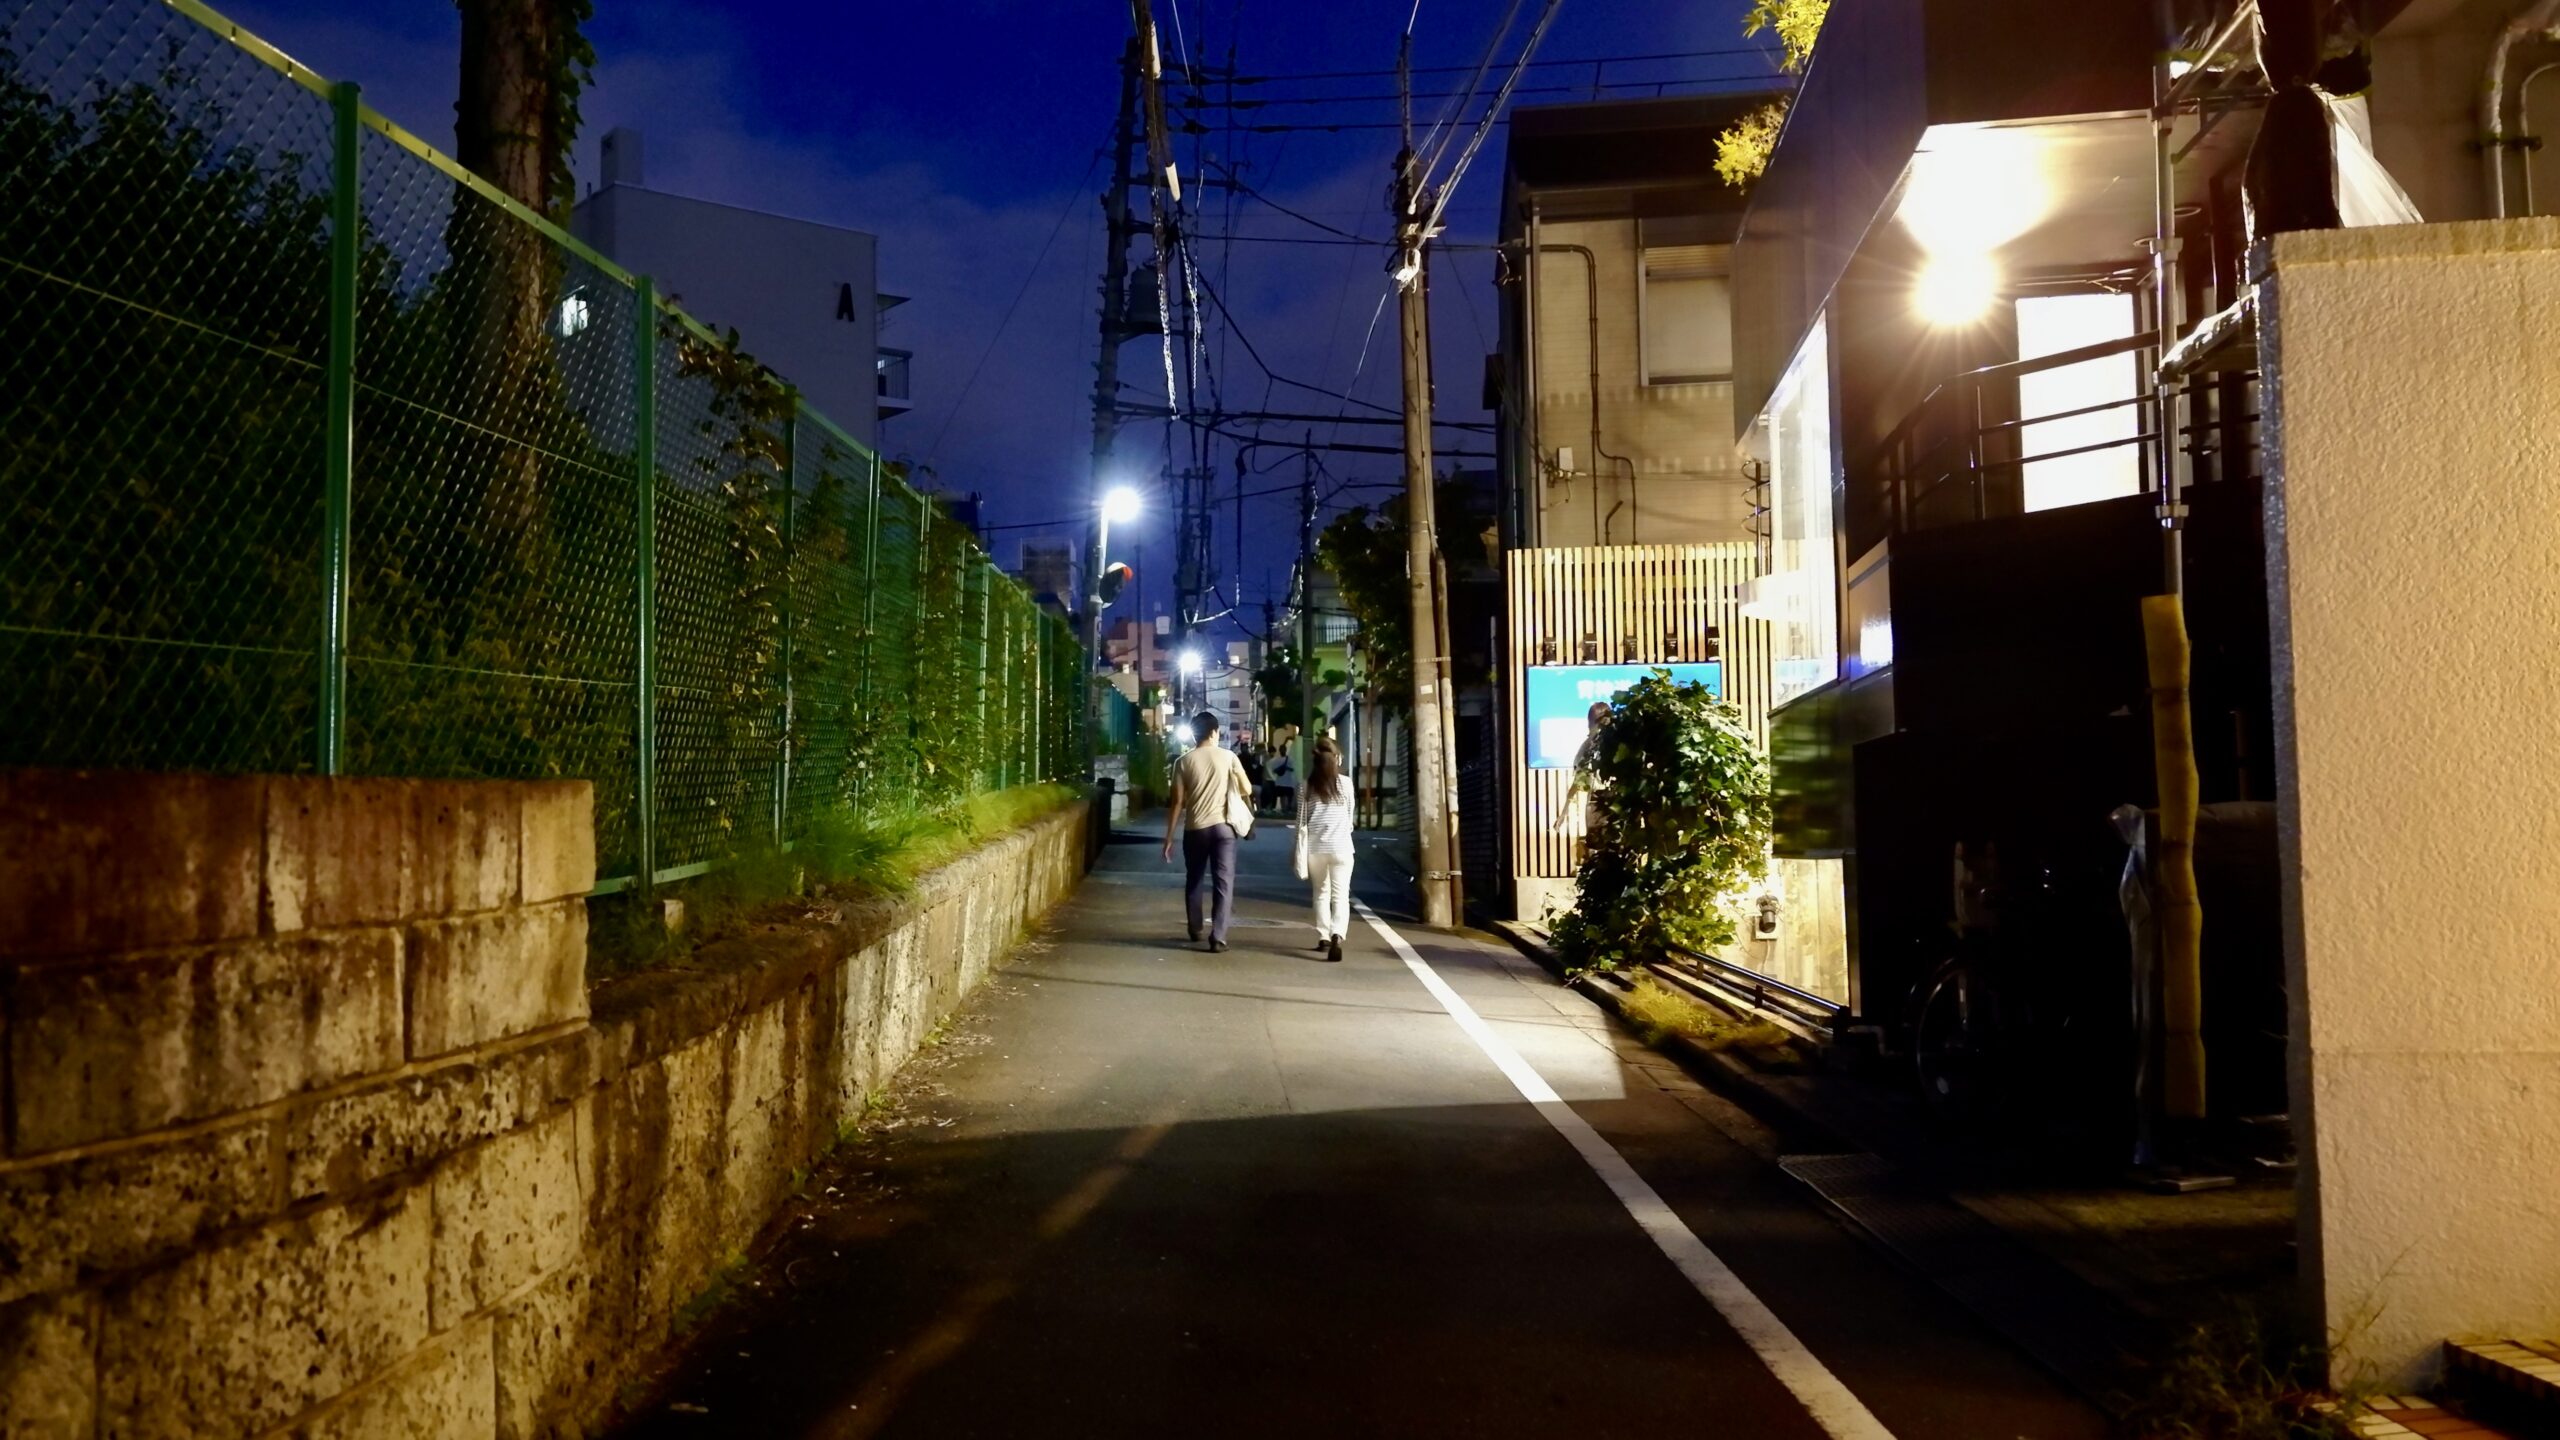 A back alley in Shibuya